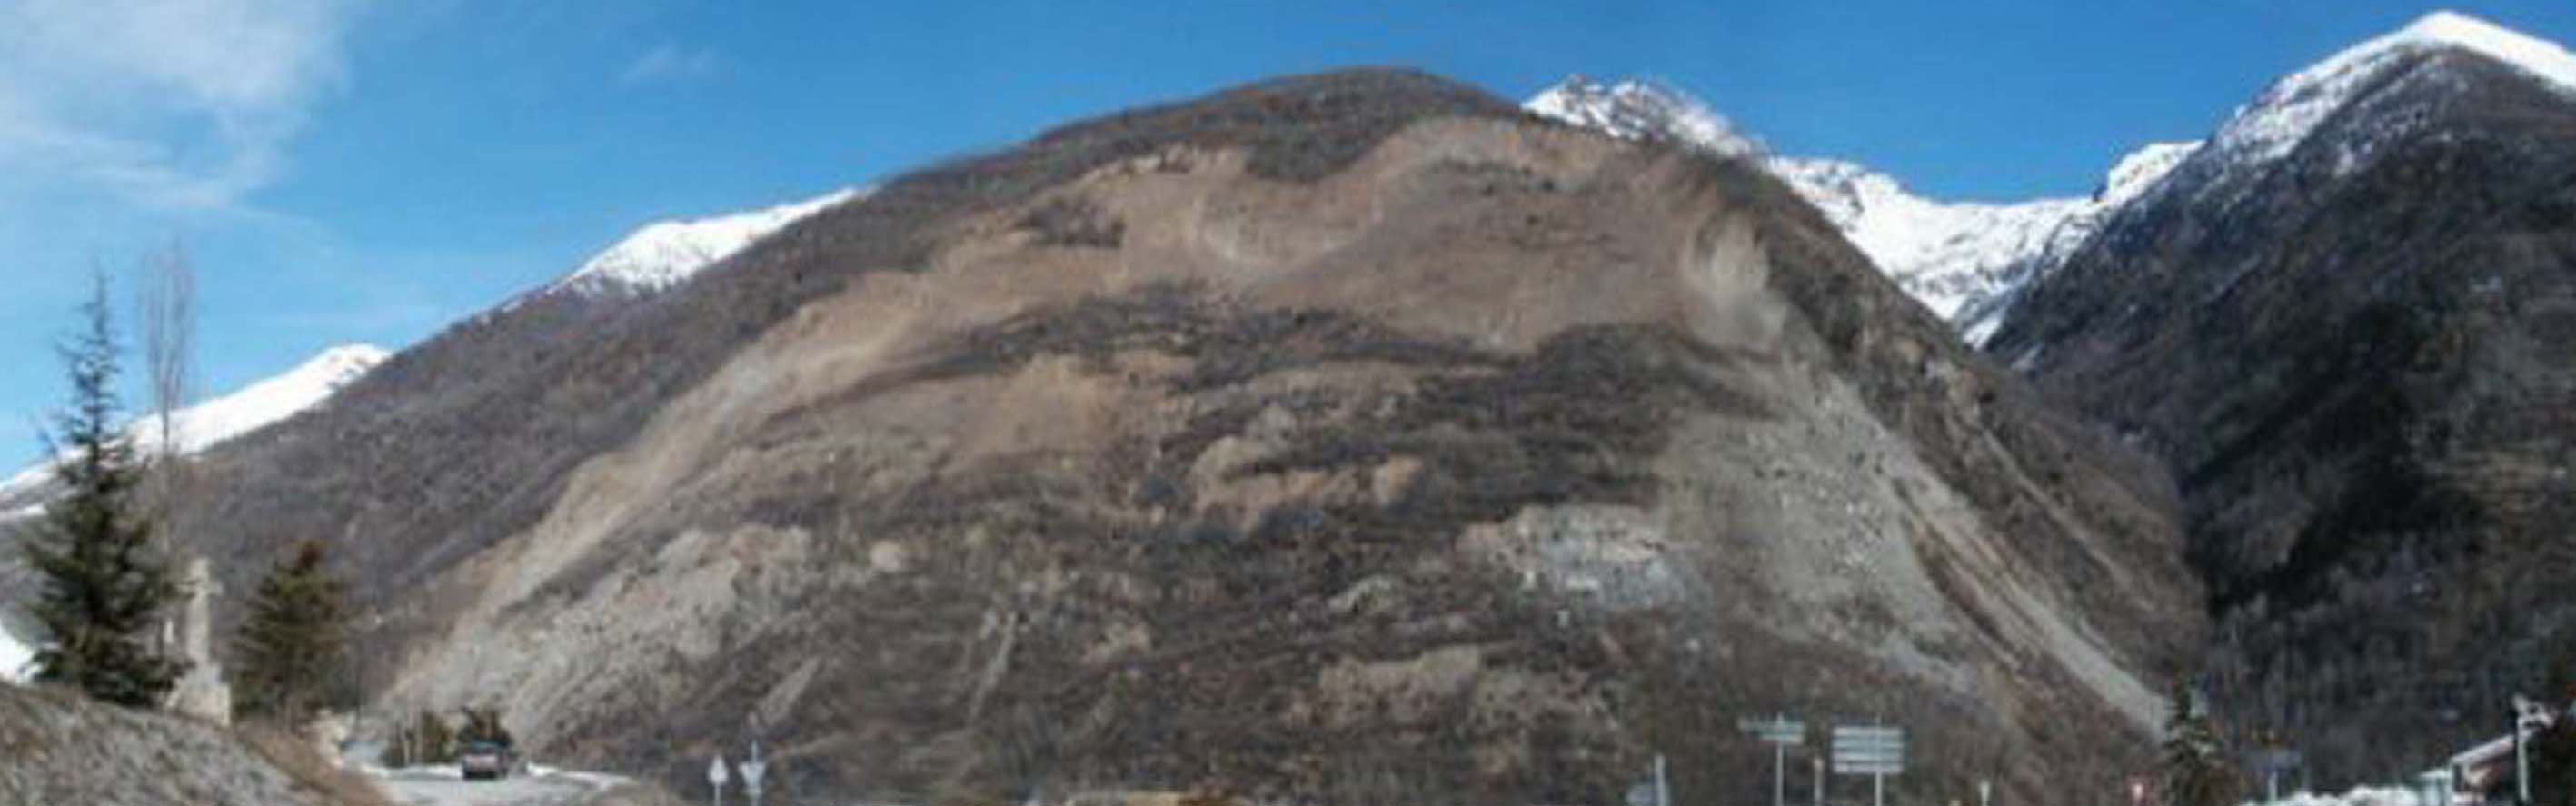 La Clapîère landslide: view of the unstable slope in 1995